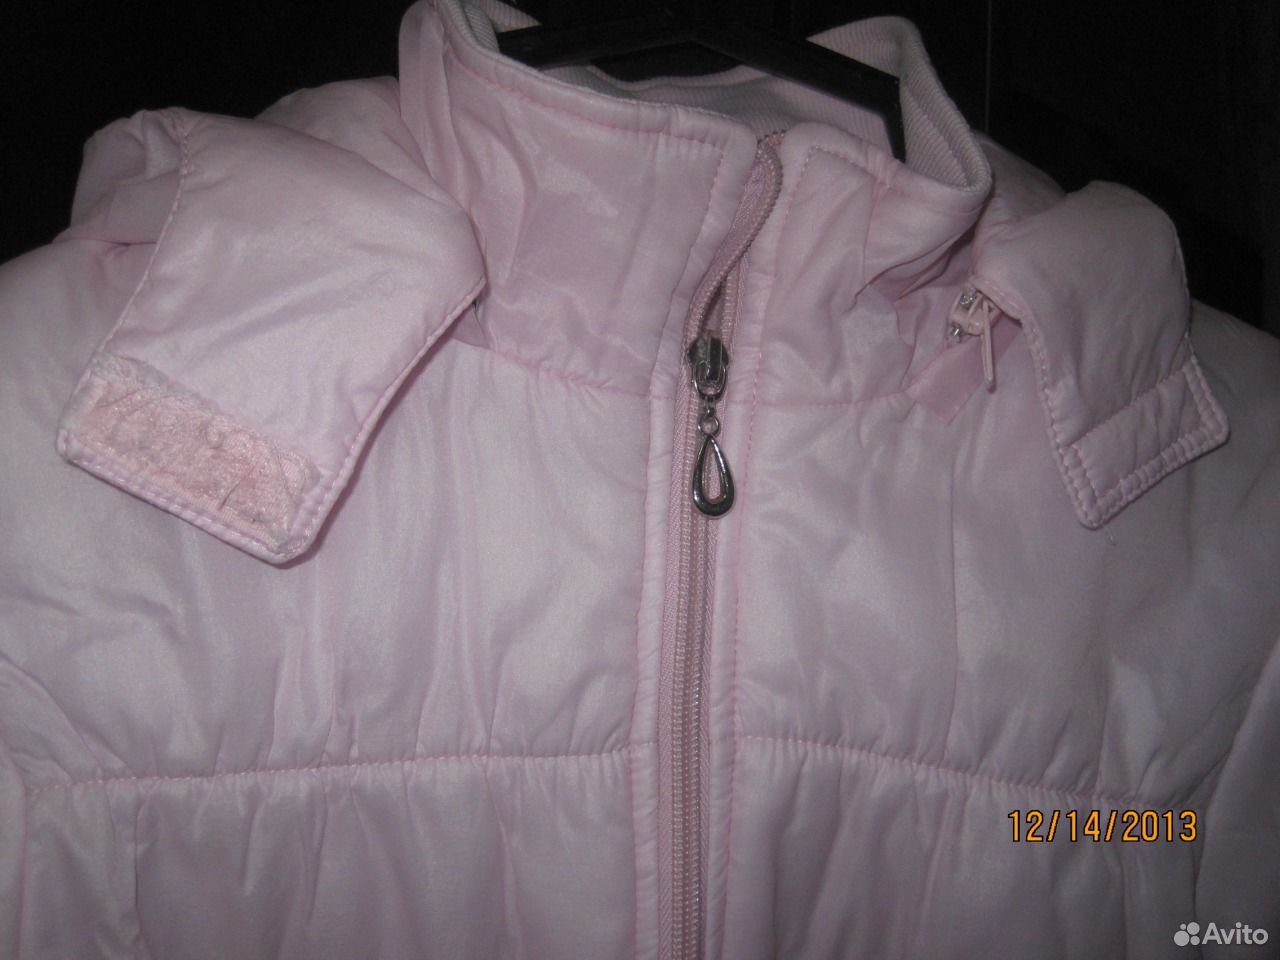 Авито куртка с капюшоном. Для девочек куртку с капюшоном розовую. Розовая куртка с белыми бантами детская. Кико розовая куртка. ТМ GNK белая куртка и розовый комбинезон.